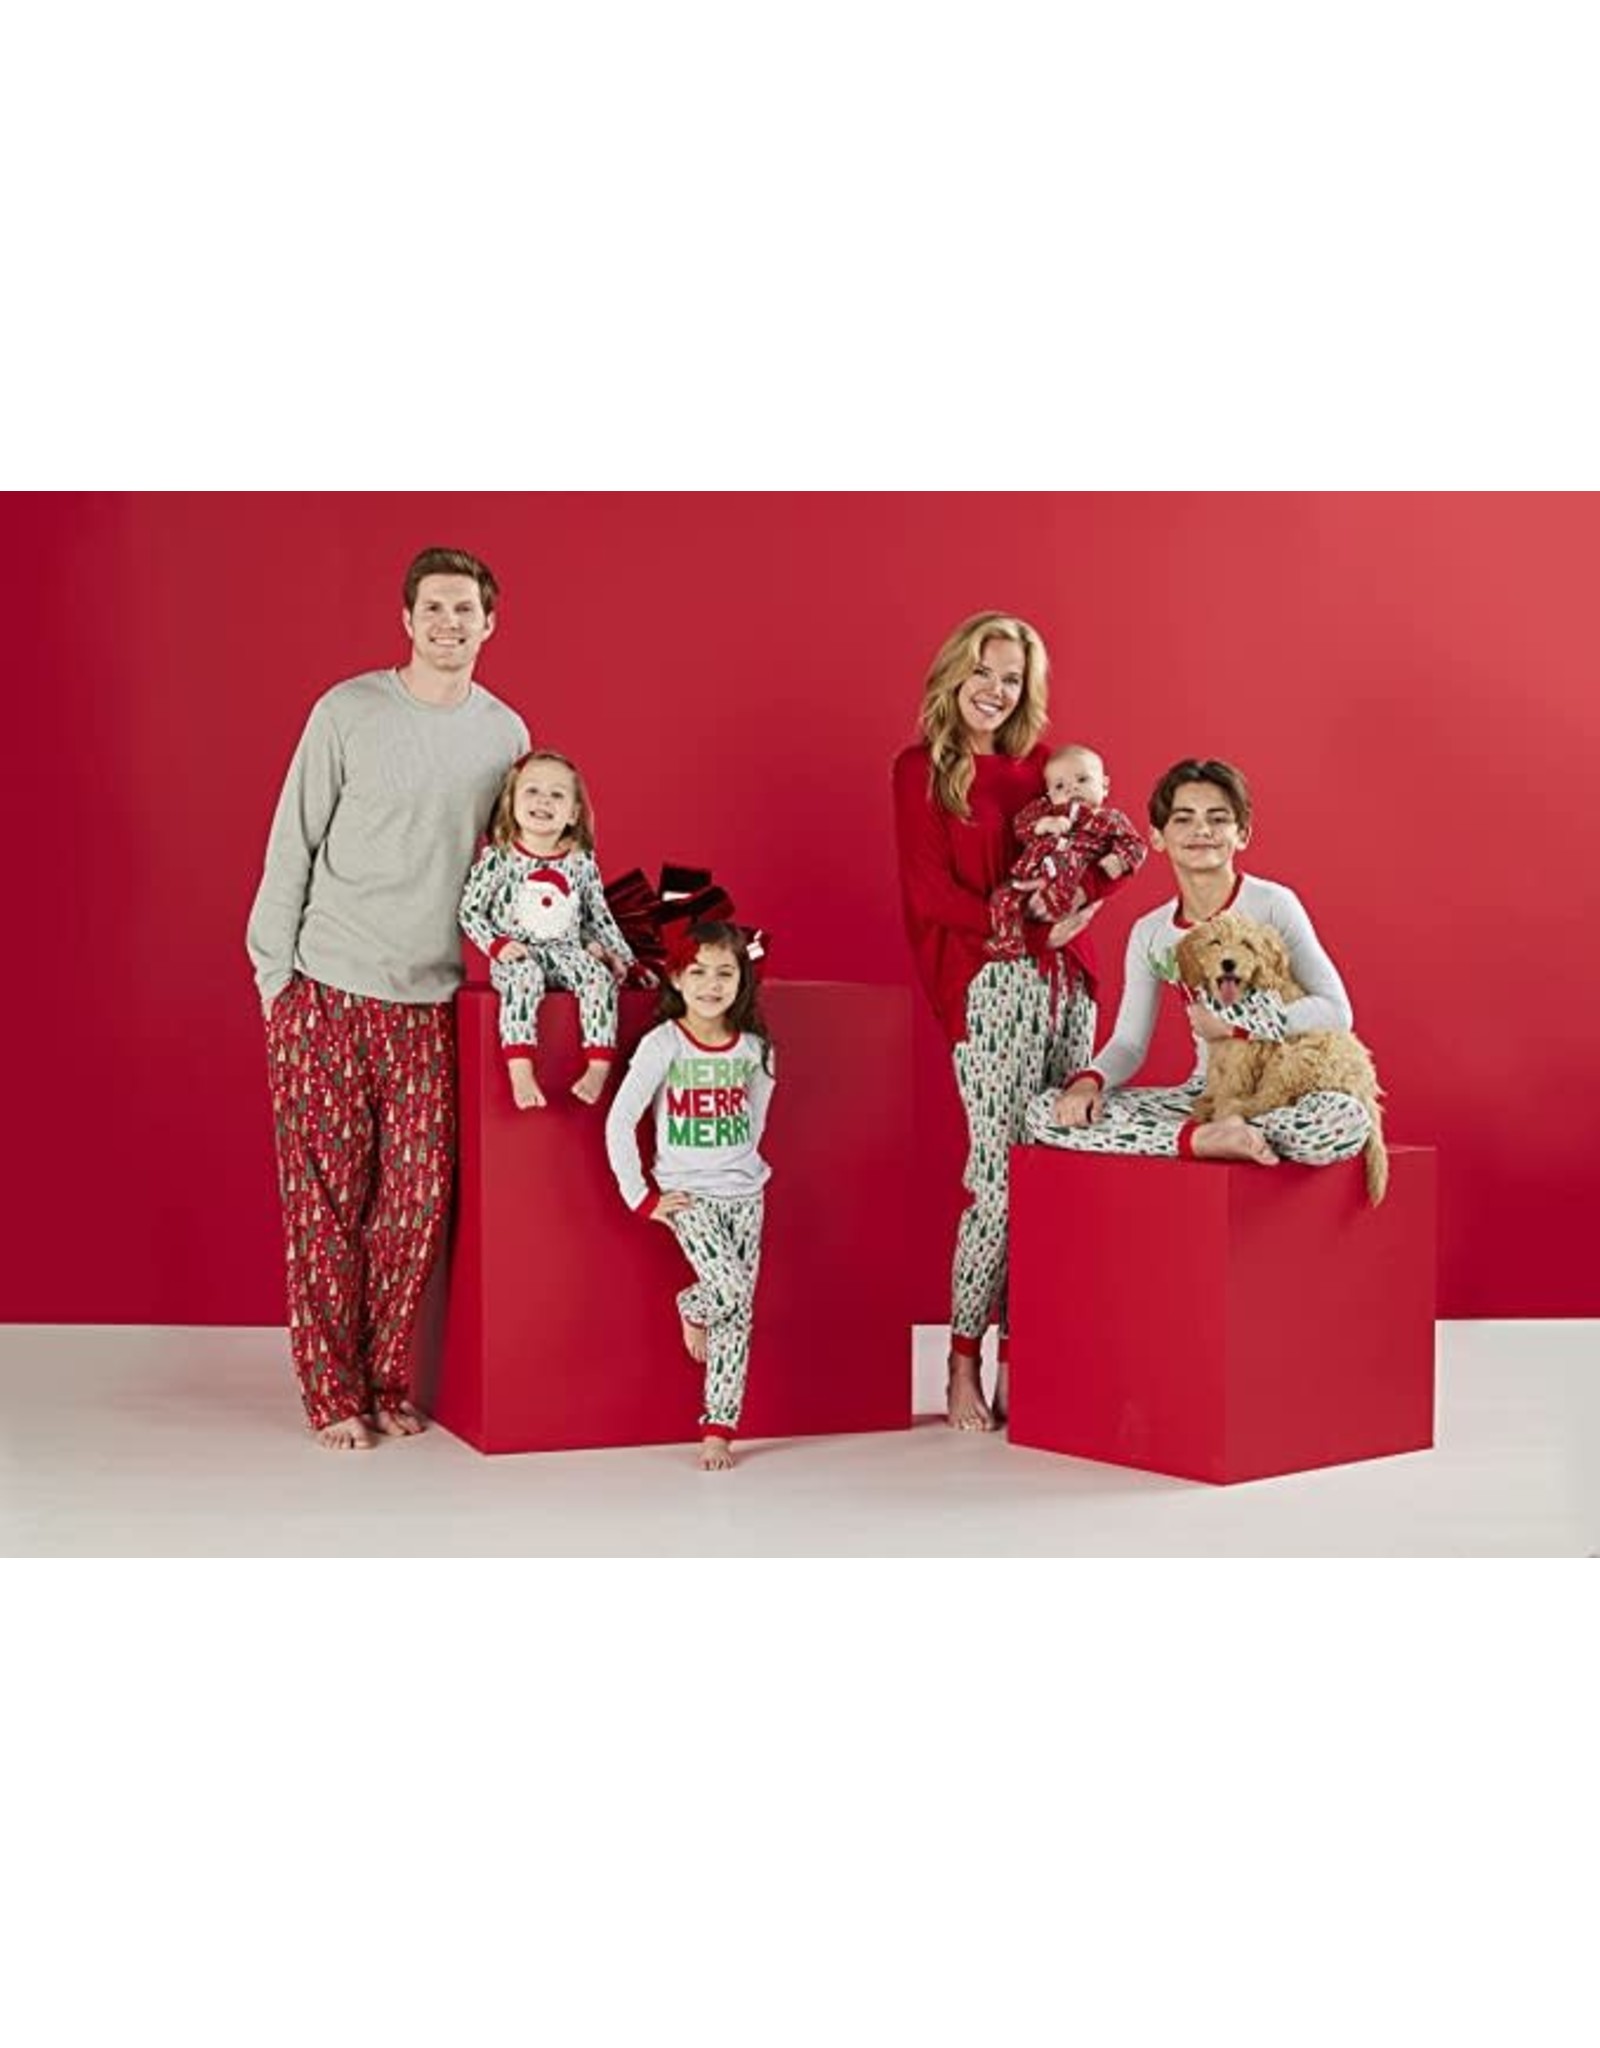 Mud Pie Christmas Sleepwear Family Pajamas 2pc Set Kids 9-12 Months